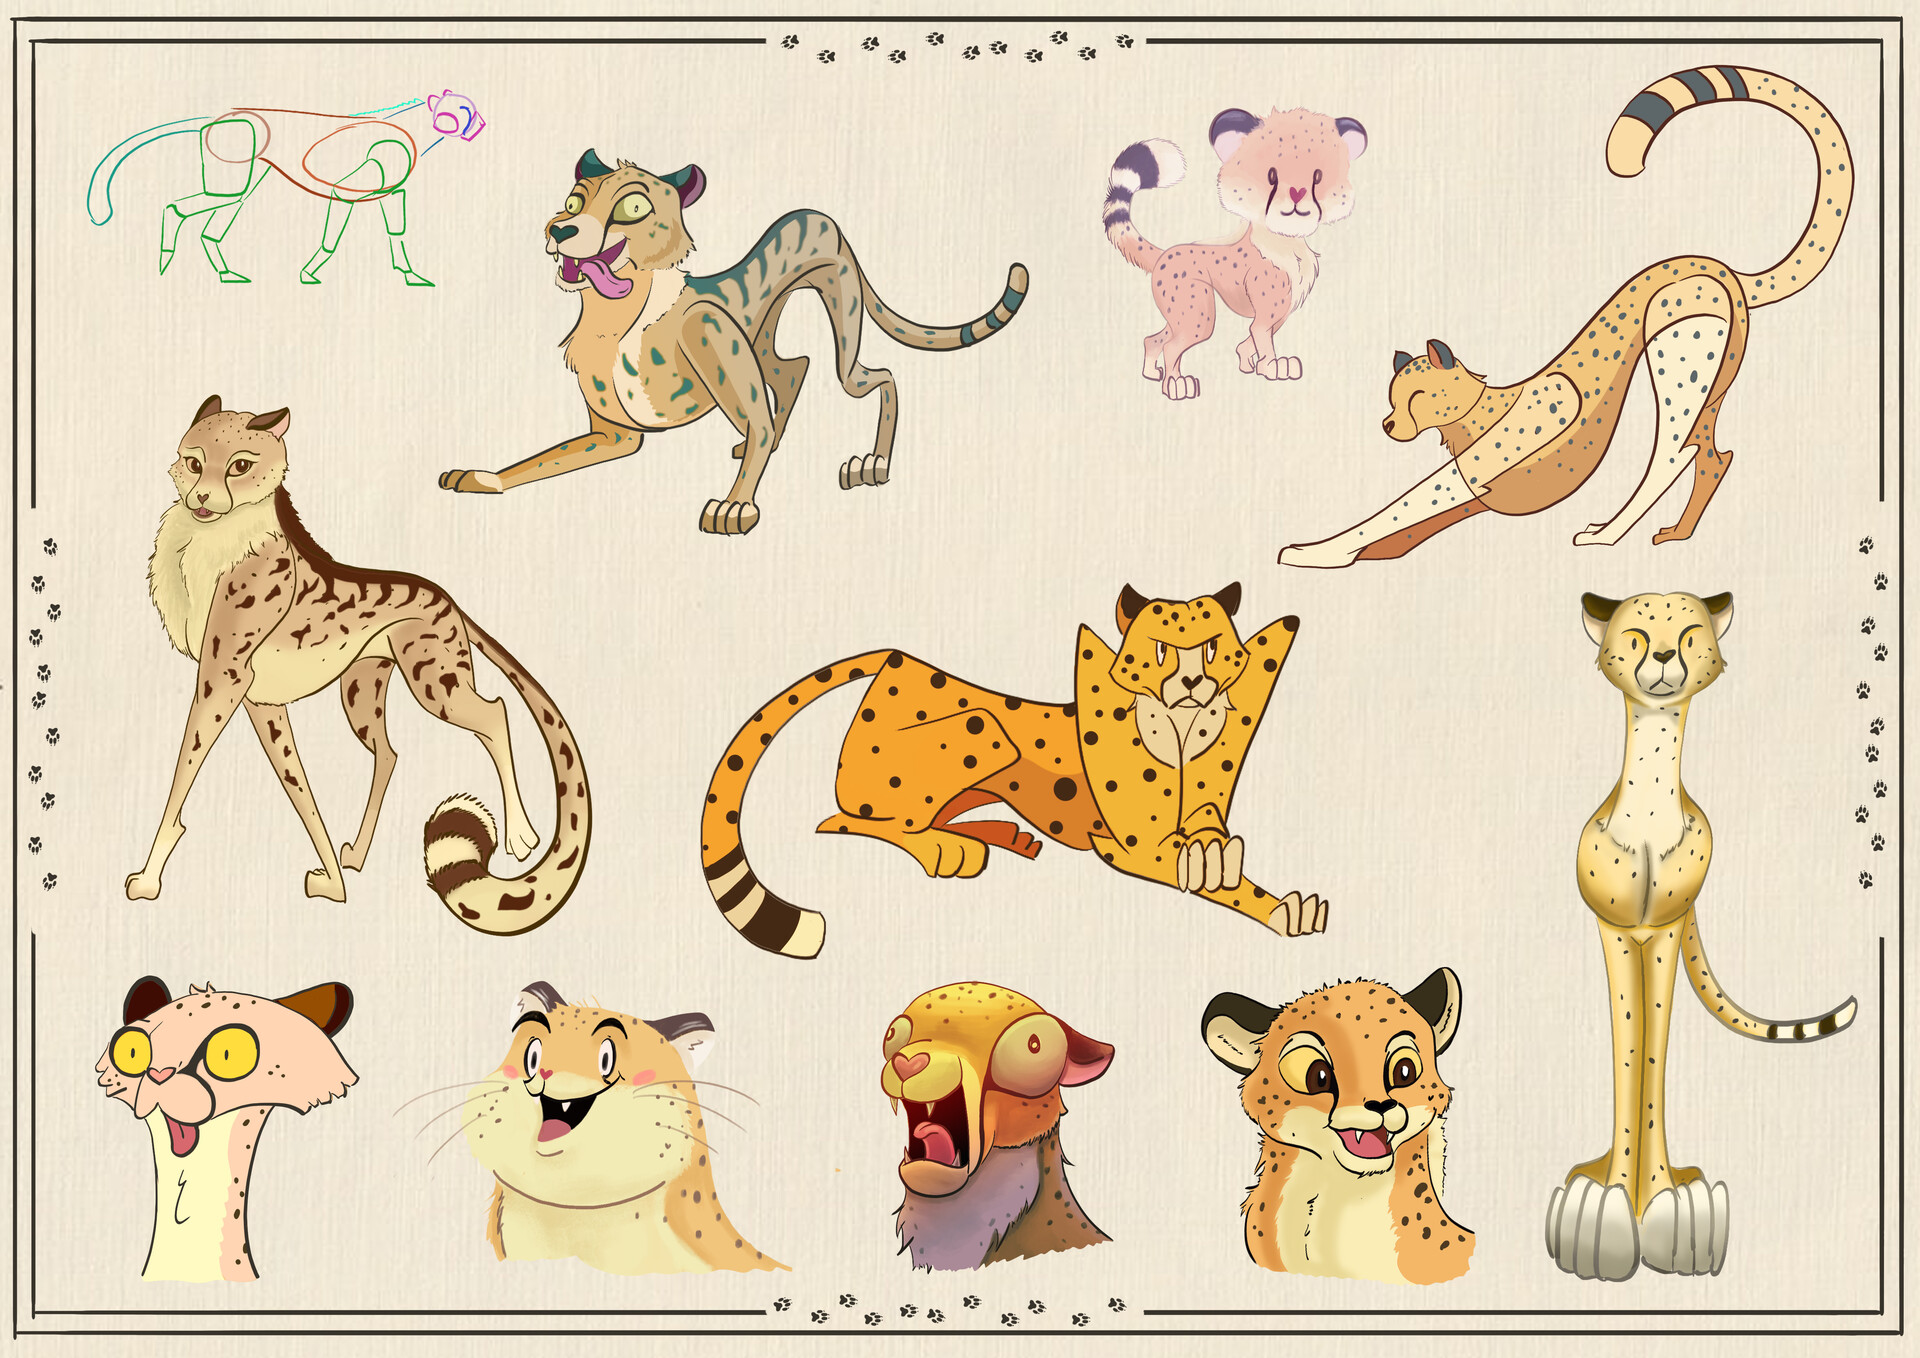 ArtStation - Cheetah cartoon style & Studies